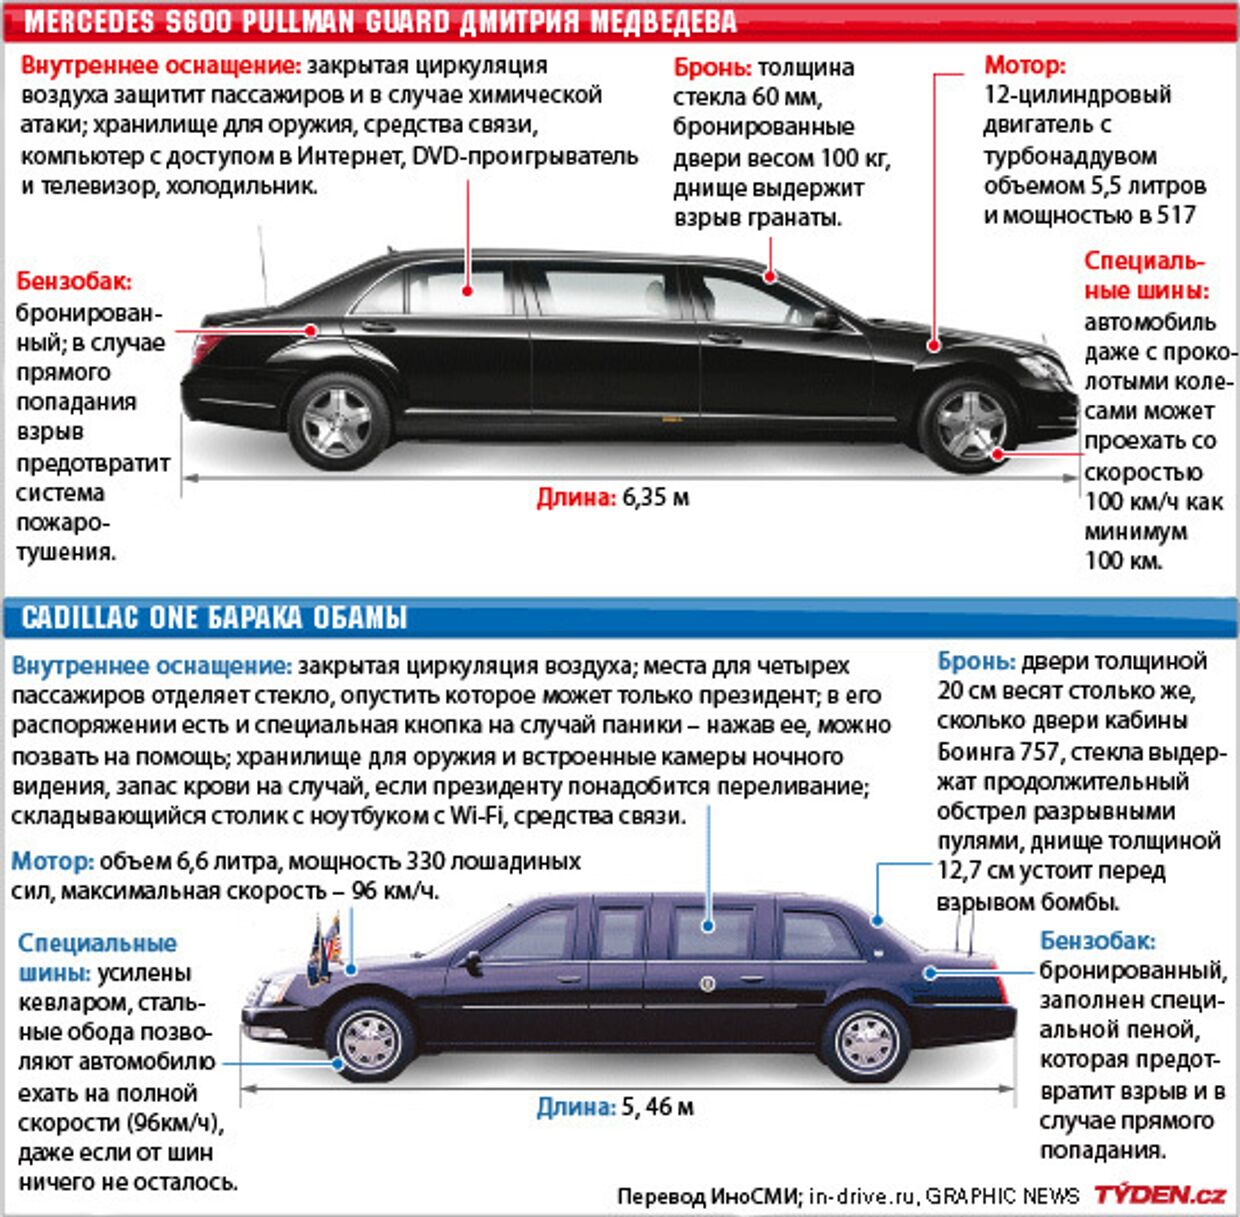 Автомобили Медведева и Обамы